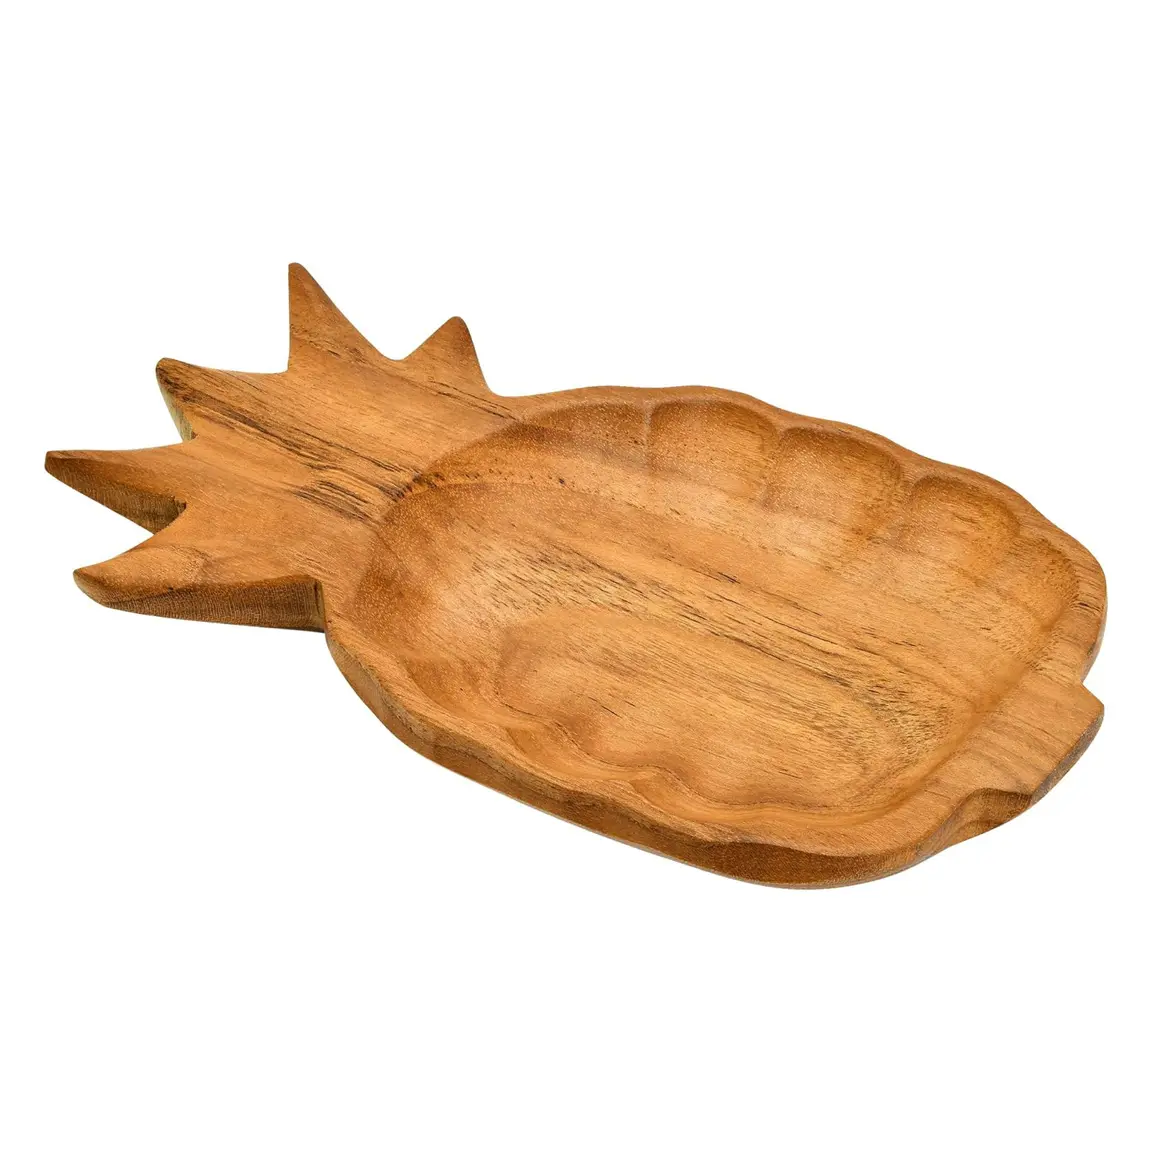 Food Safe Teak Wood Serving Platter Versatile Wood Fruit Plate Pineapple Carved Wooden Kitchen Decor & Serving Bowl for Salad